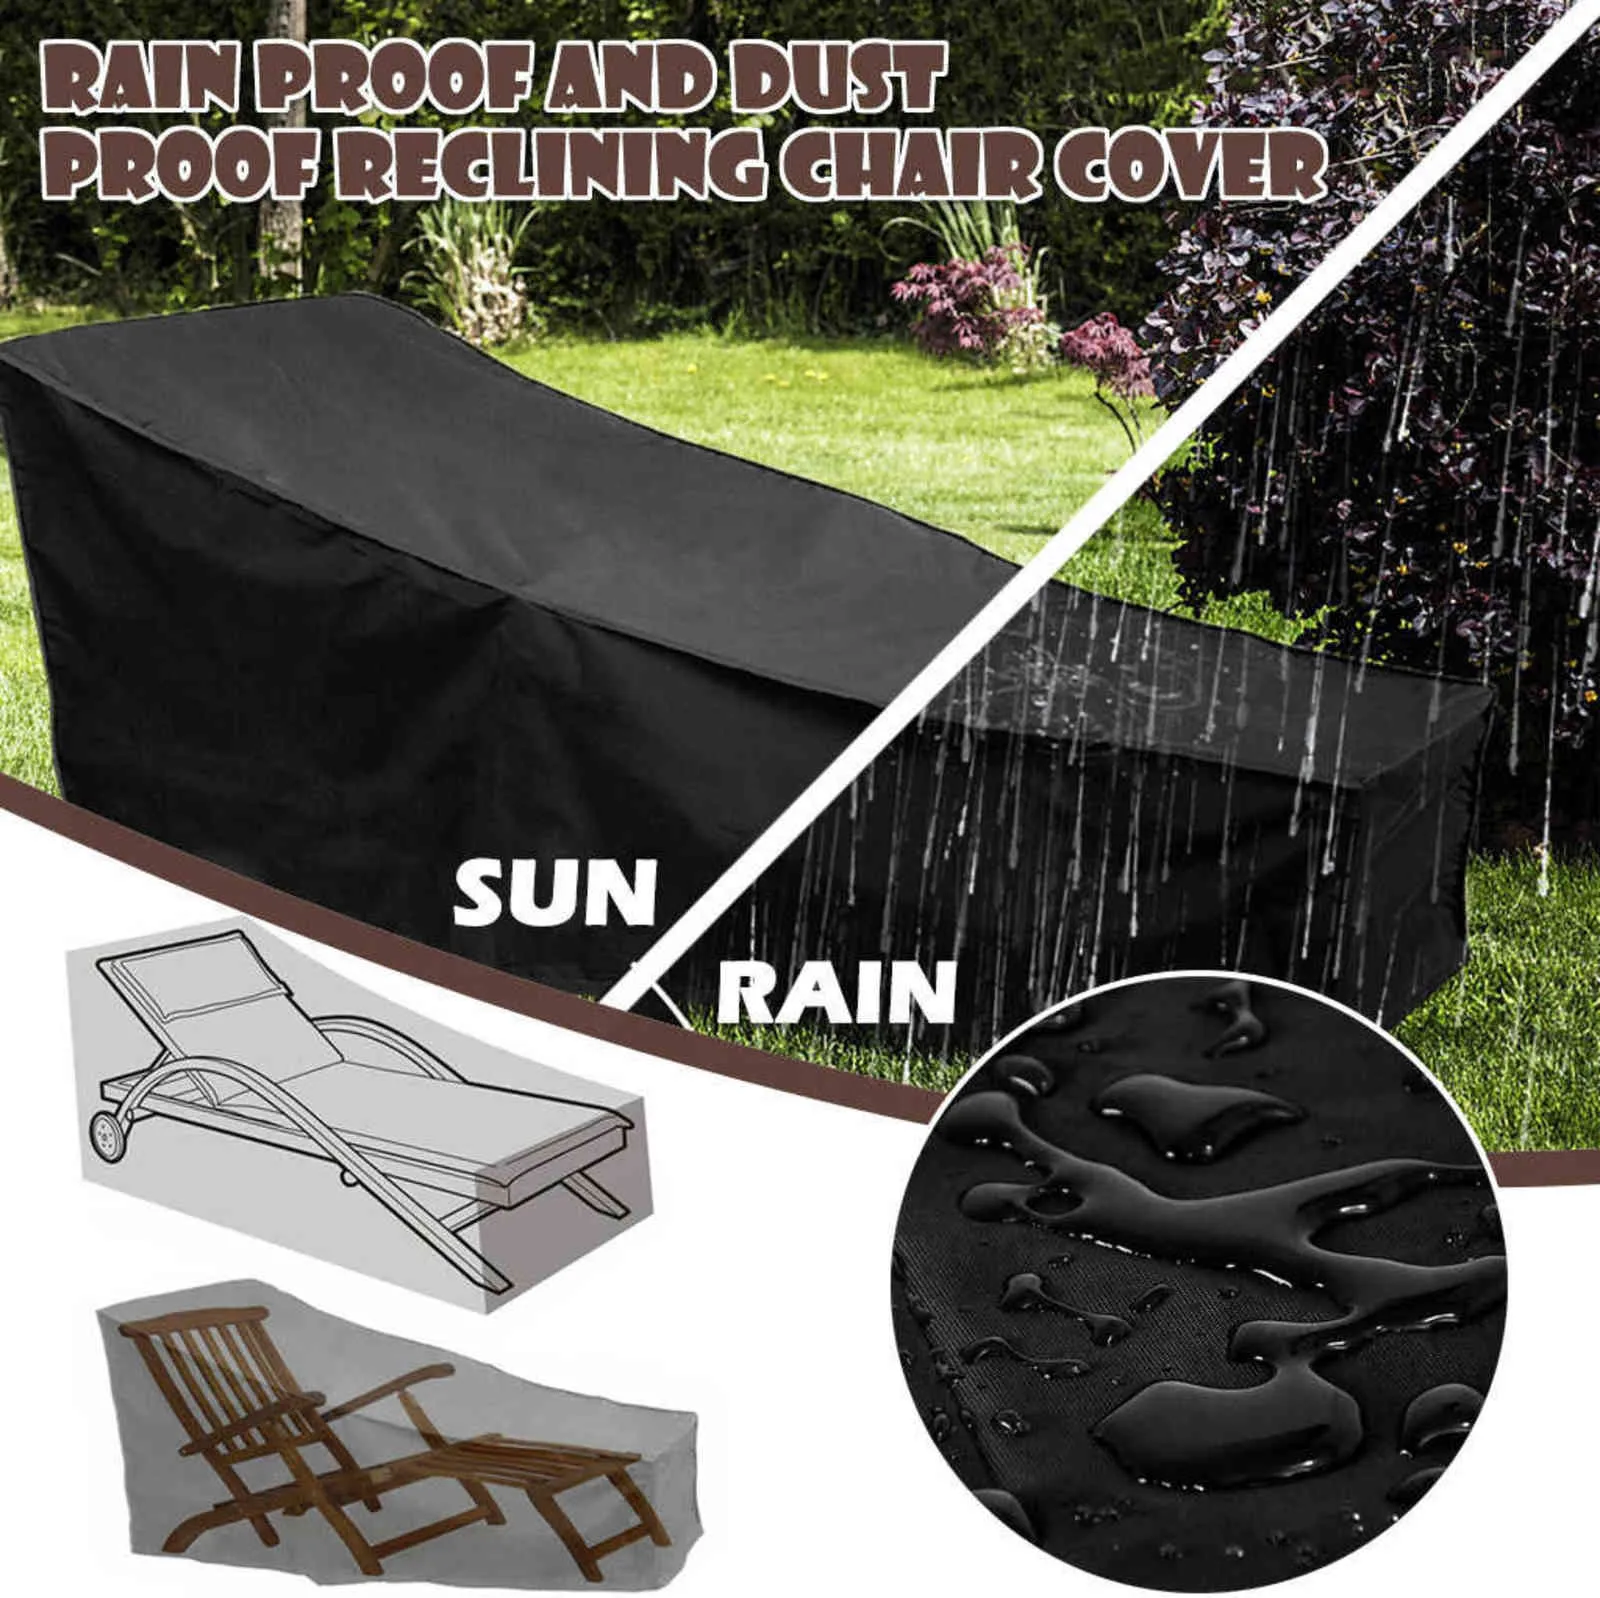 Ao ar livre à prova d 'água capa jardim mobiliário de chuva cadeira de chuva protetor à prova de poeira poliéster conveniente 211116